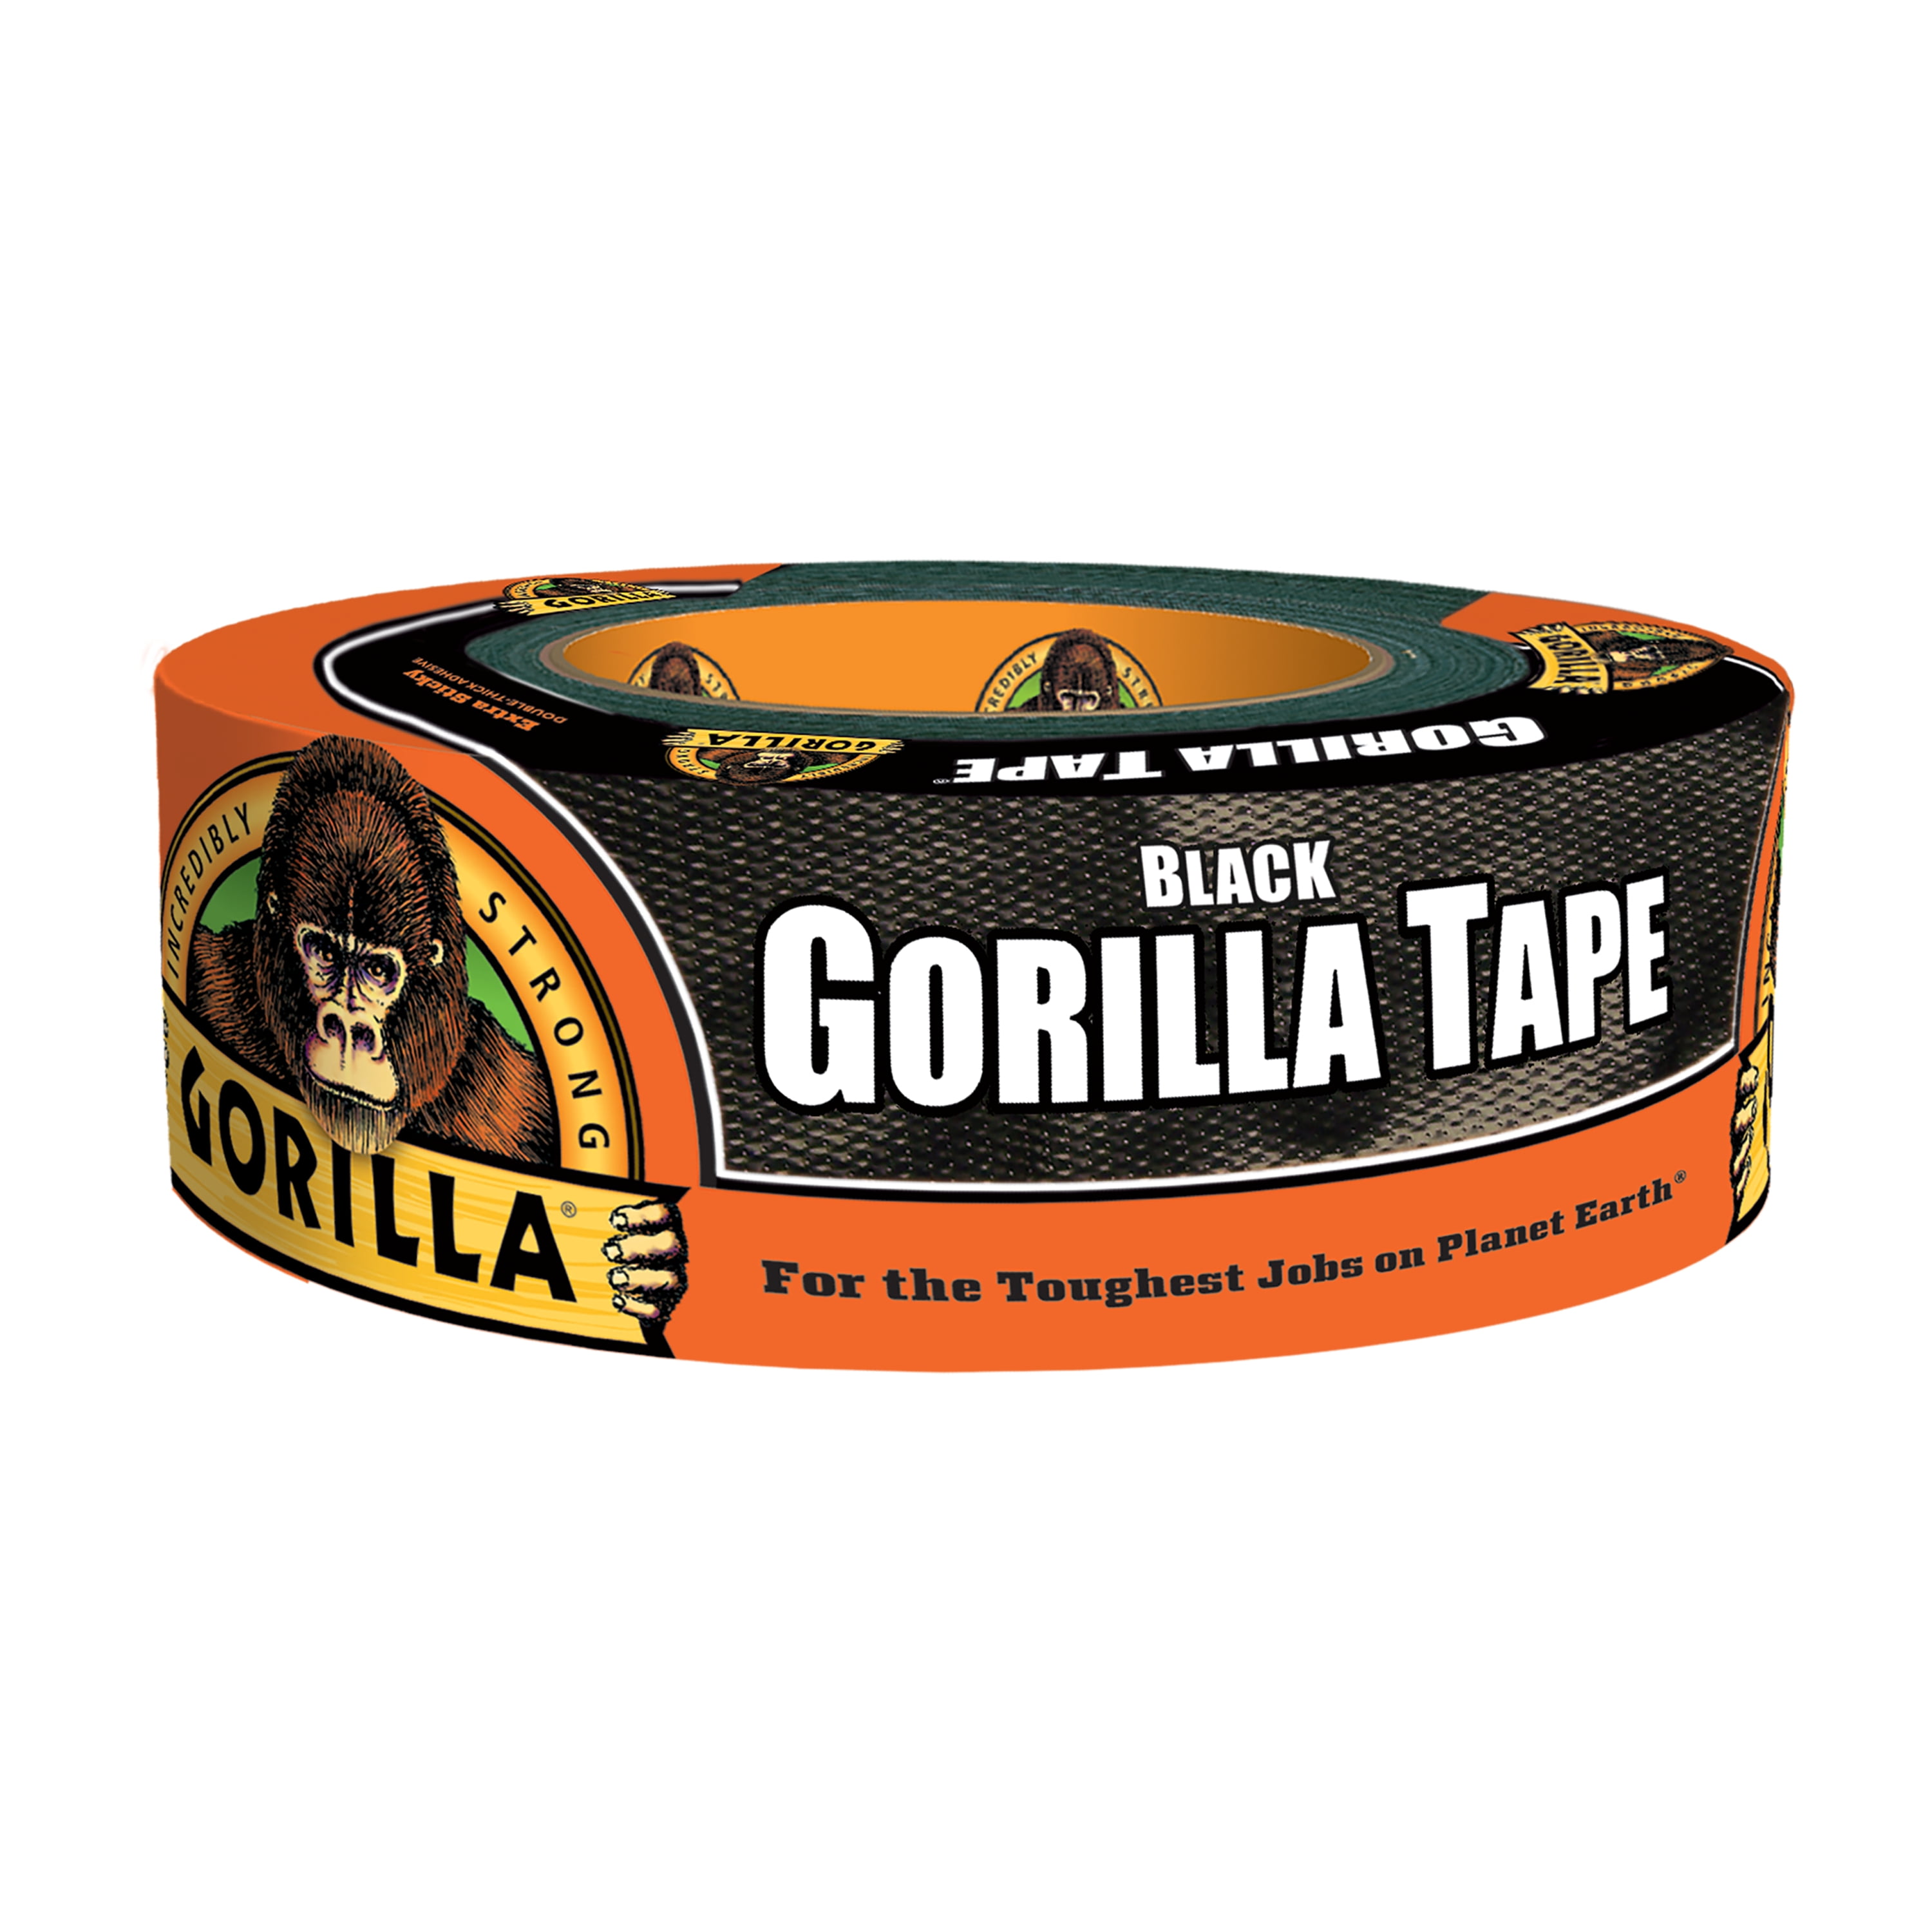 GORILLA TAPE 1 INCH X 30 FEET Heavy Duty Black Duct Tape #6100102 